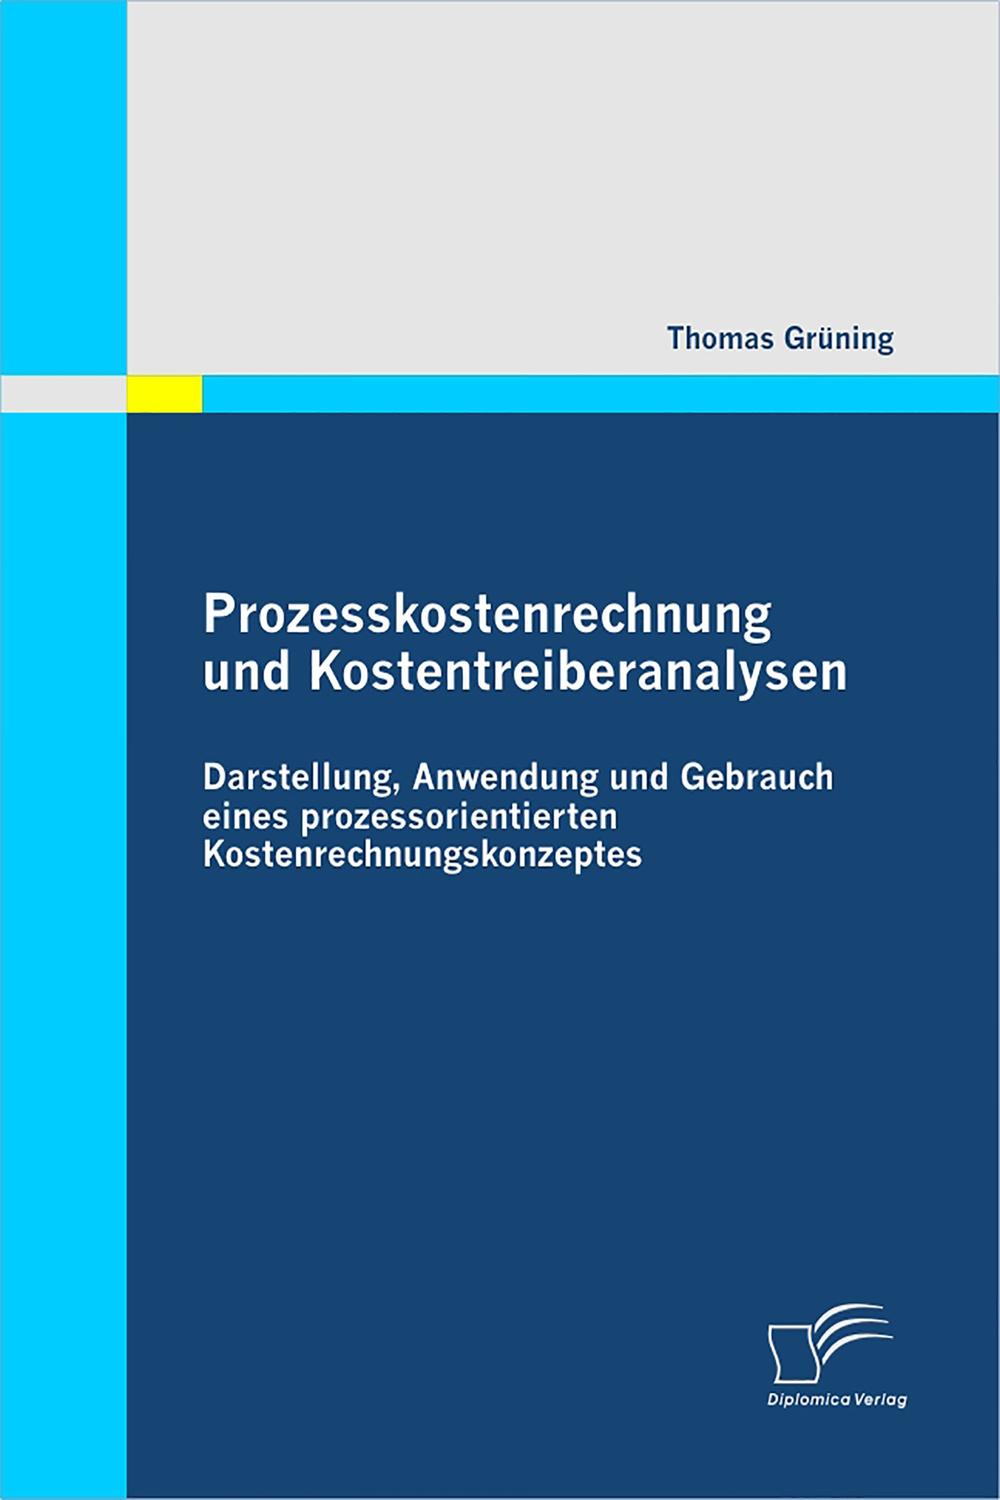 Prozesskostenrechnung und Kostentreiberanalysen - Thomas Grüning